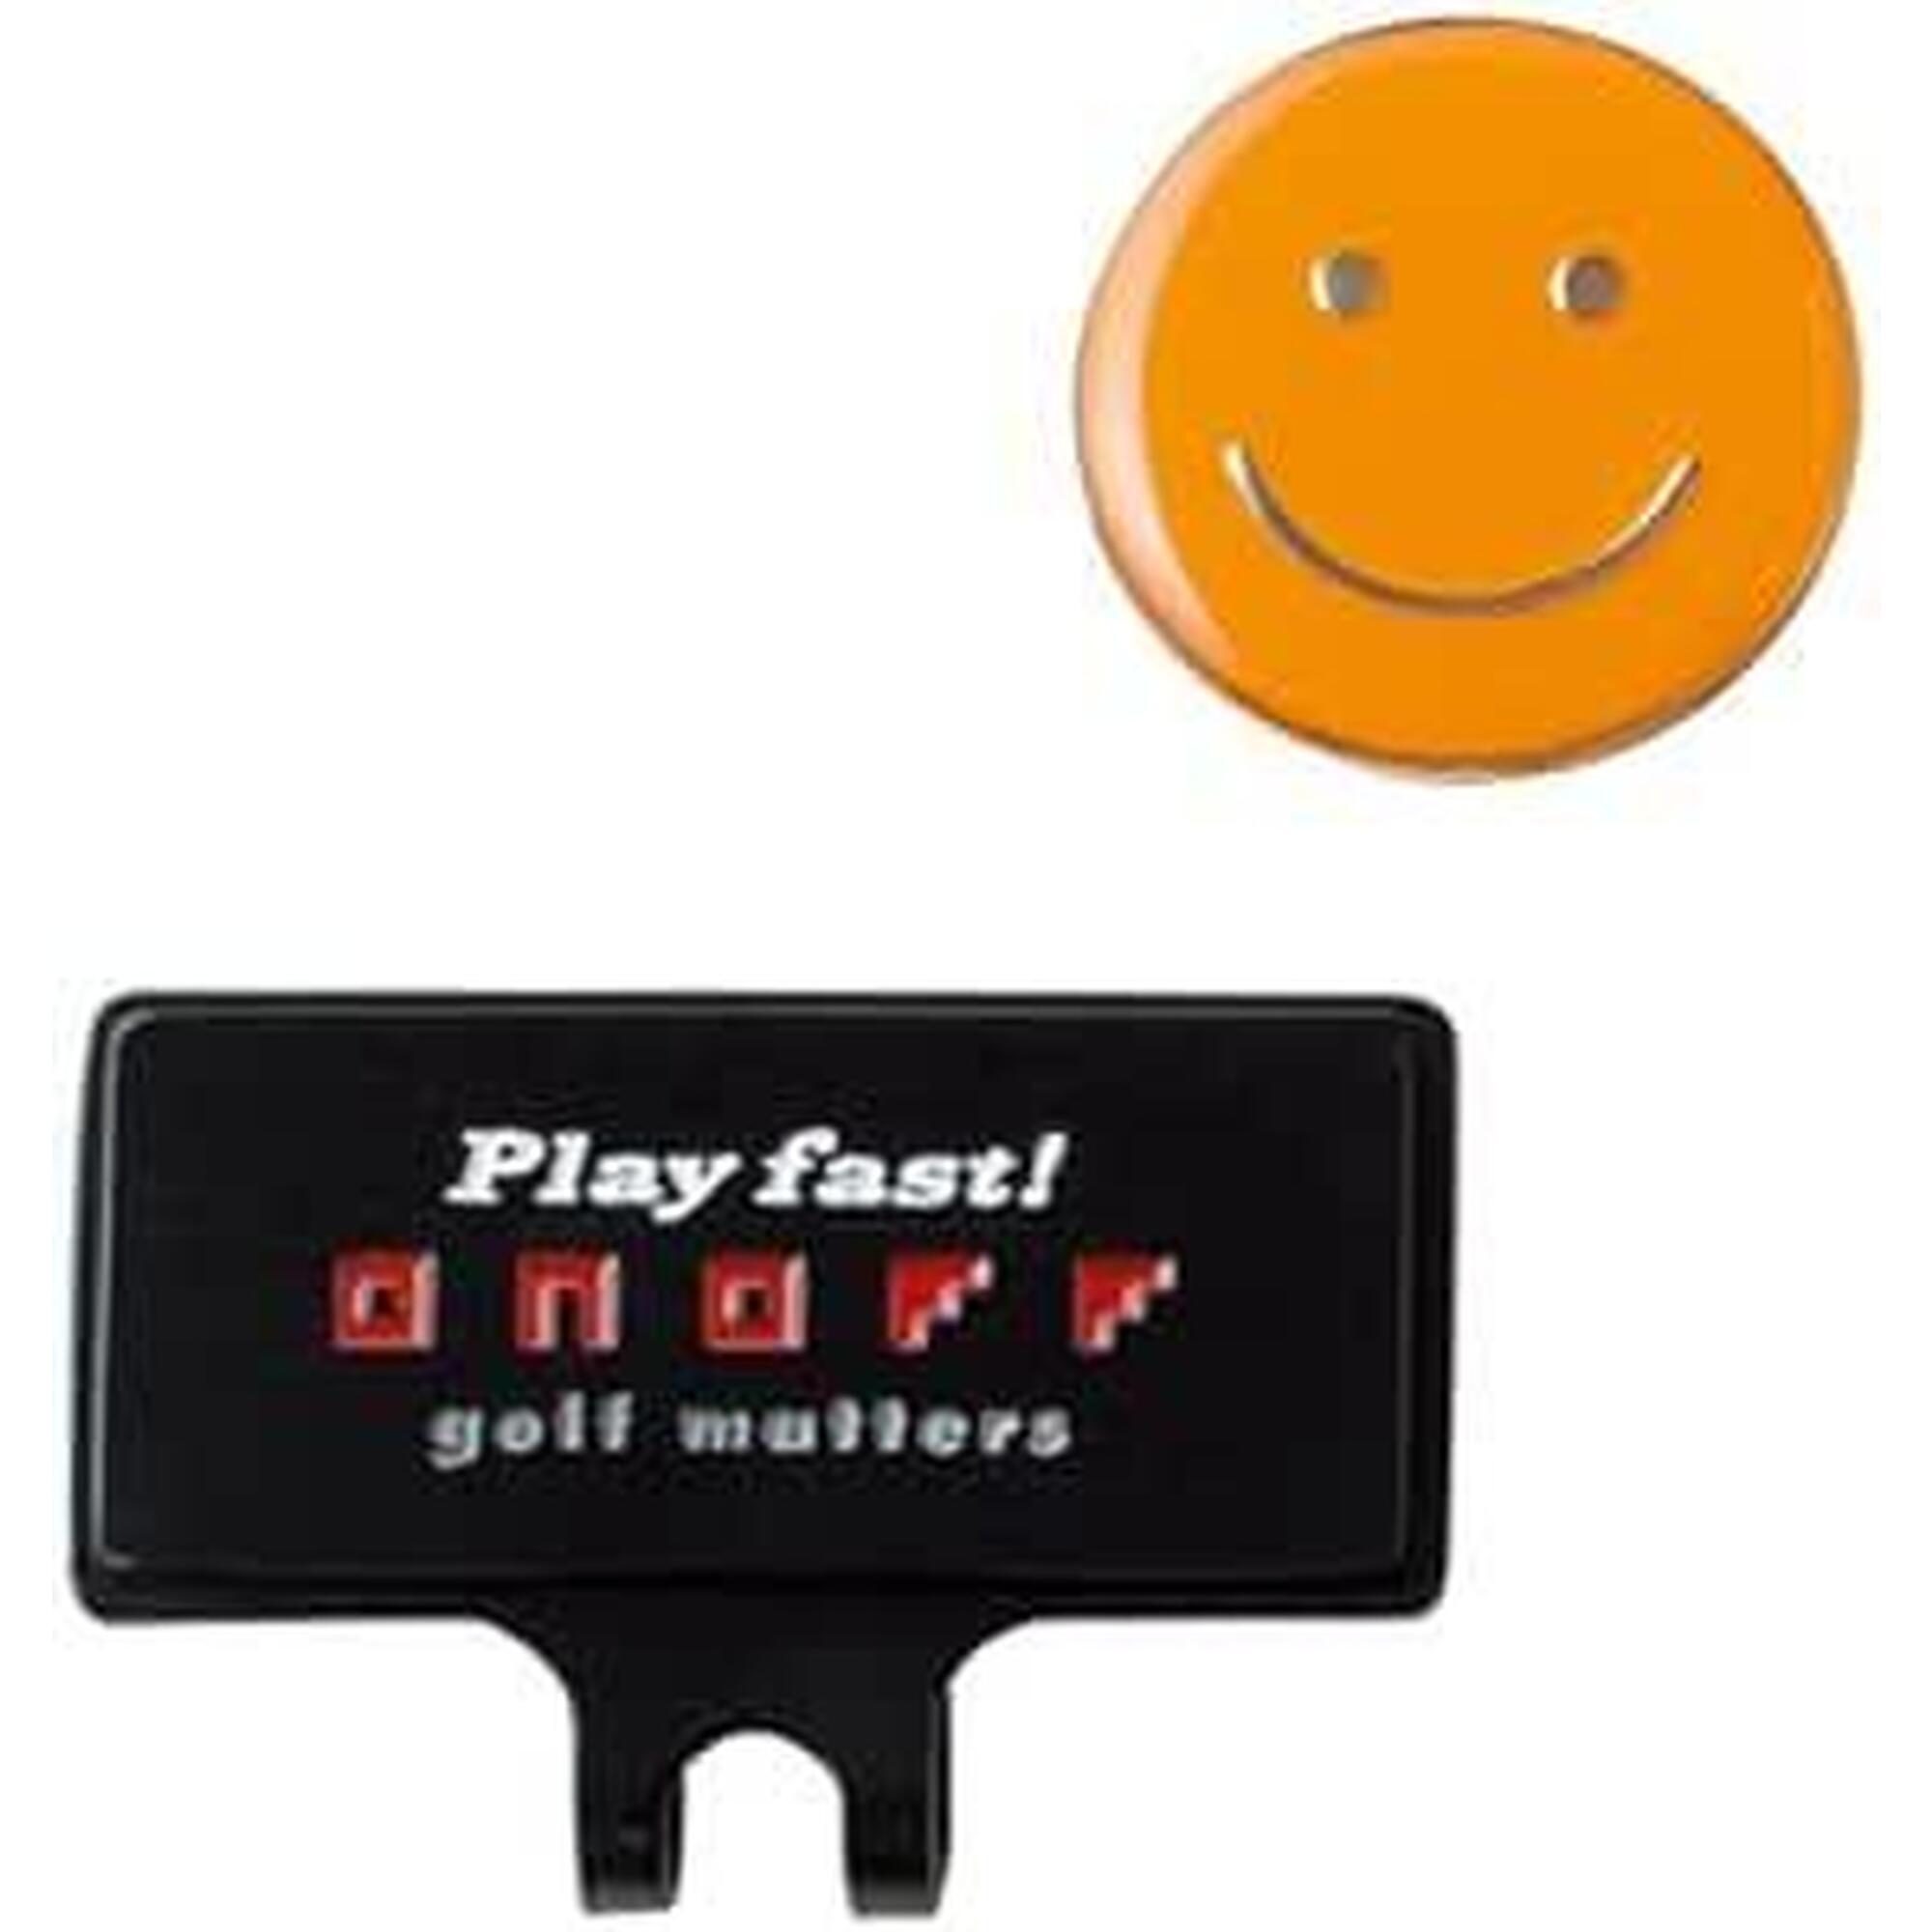 笑臉高爾夫球球標 - 橙色